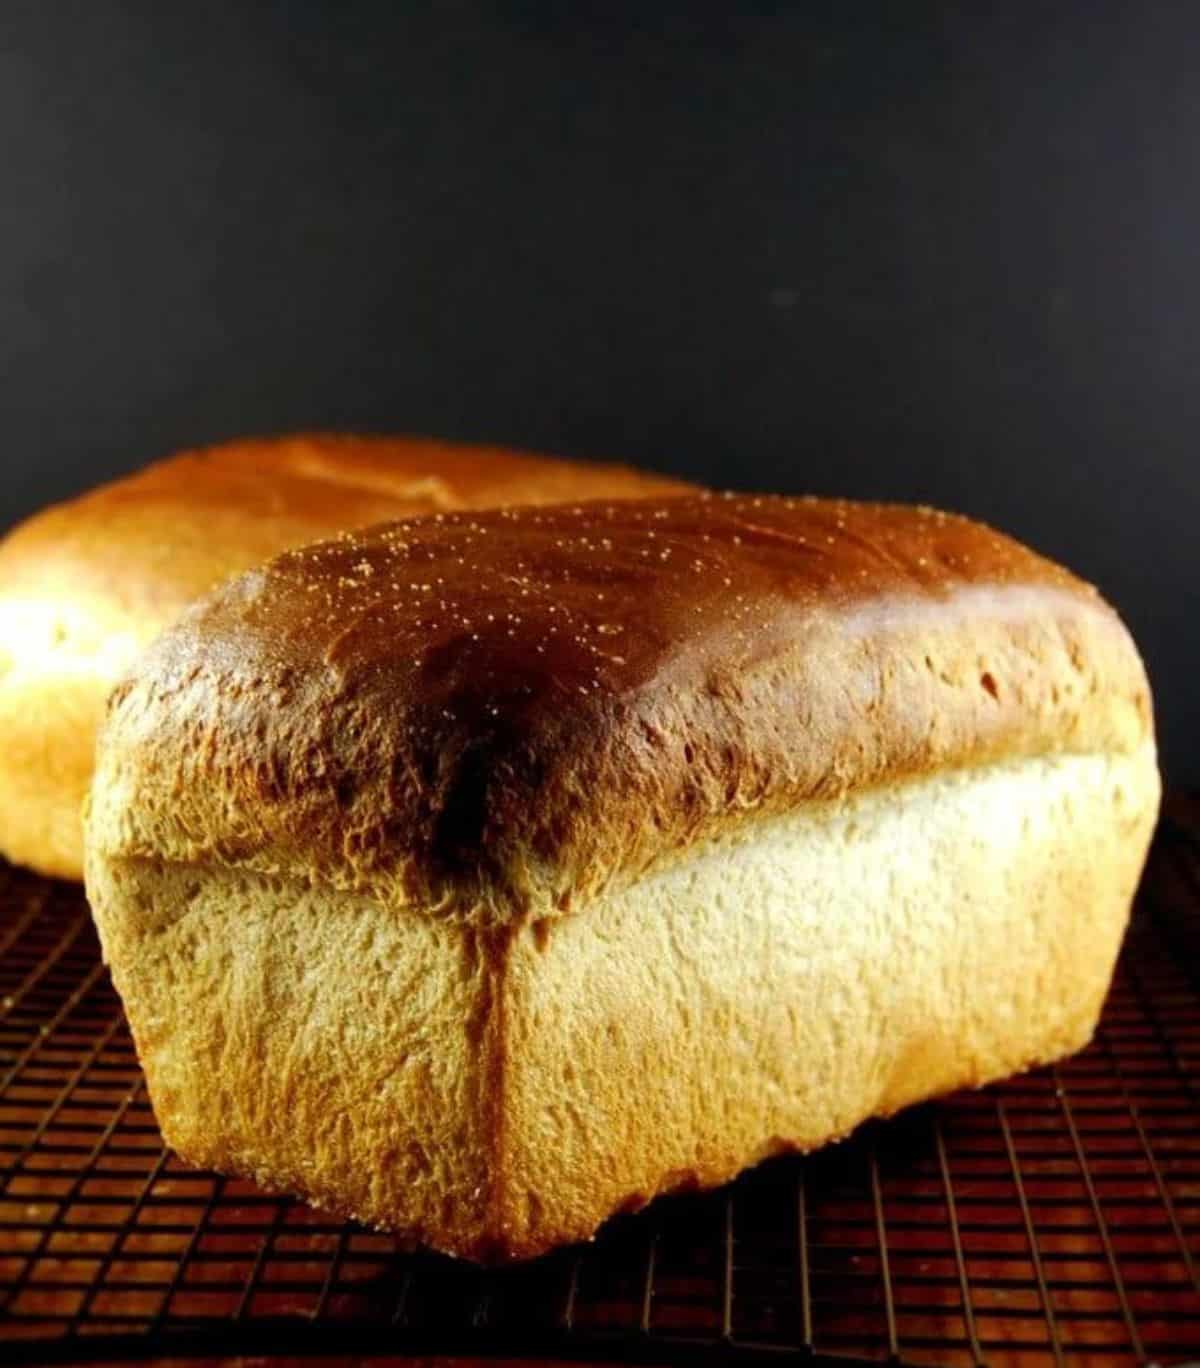 Sourdough sandwich bread loaves on dark background.